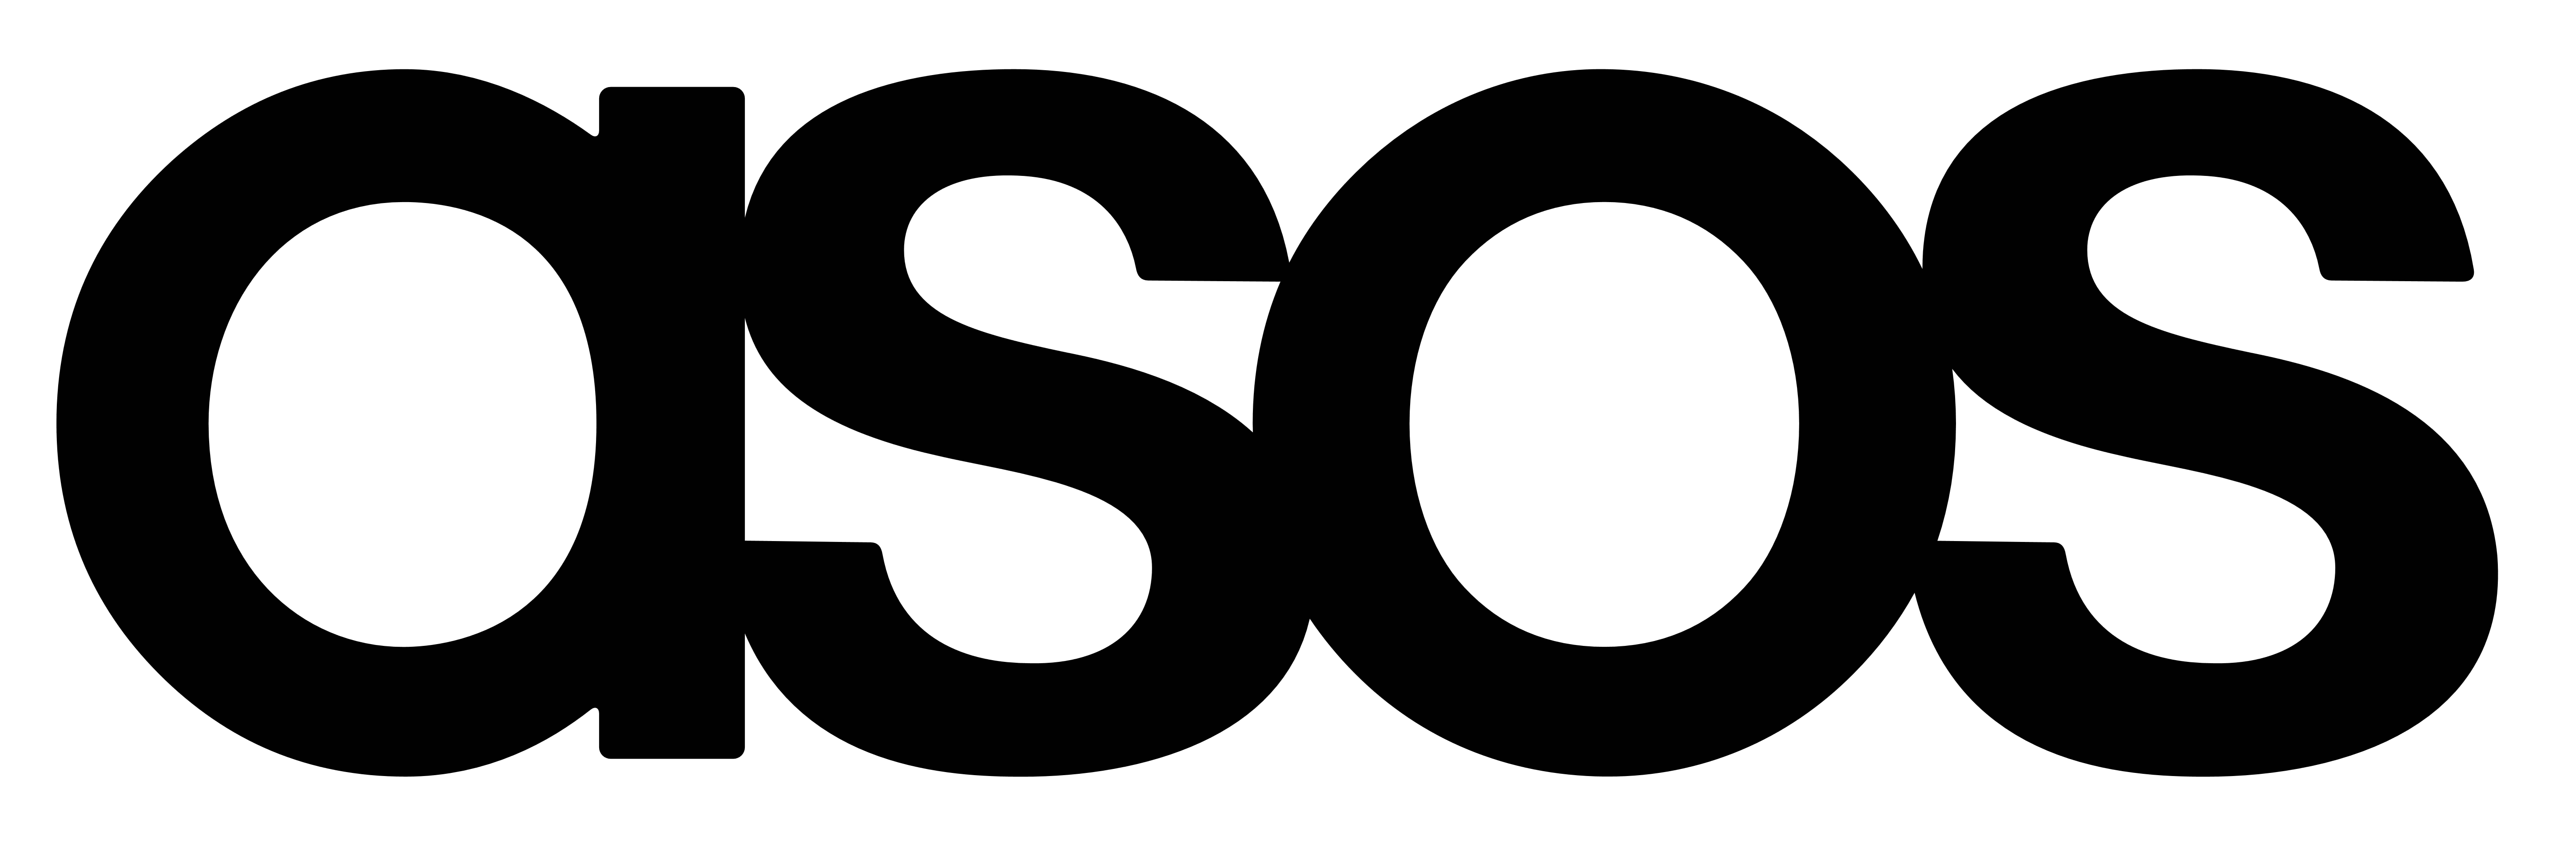 Asos.com Logo - Asos.com Voucher and Promo Codes August 2019 — Shopper.com